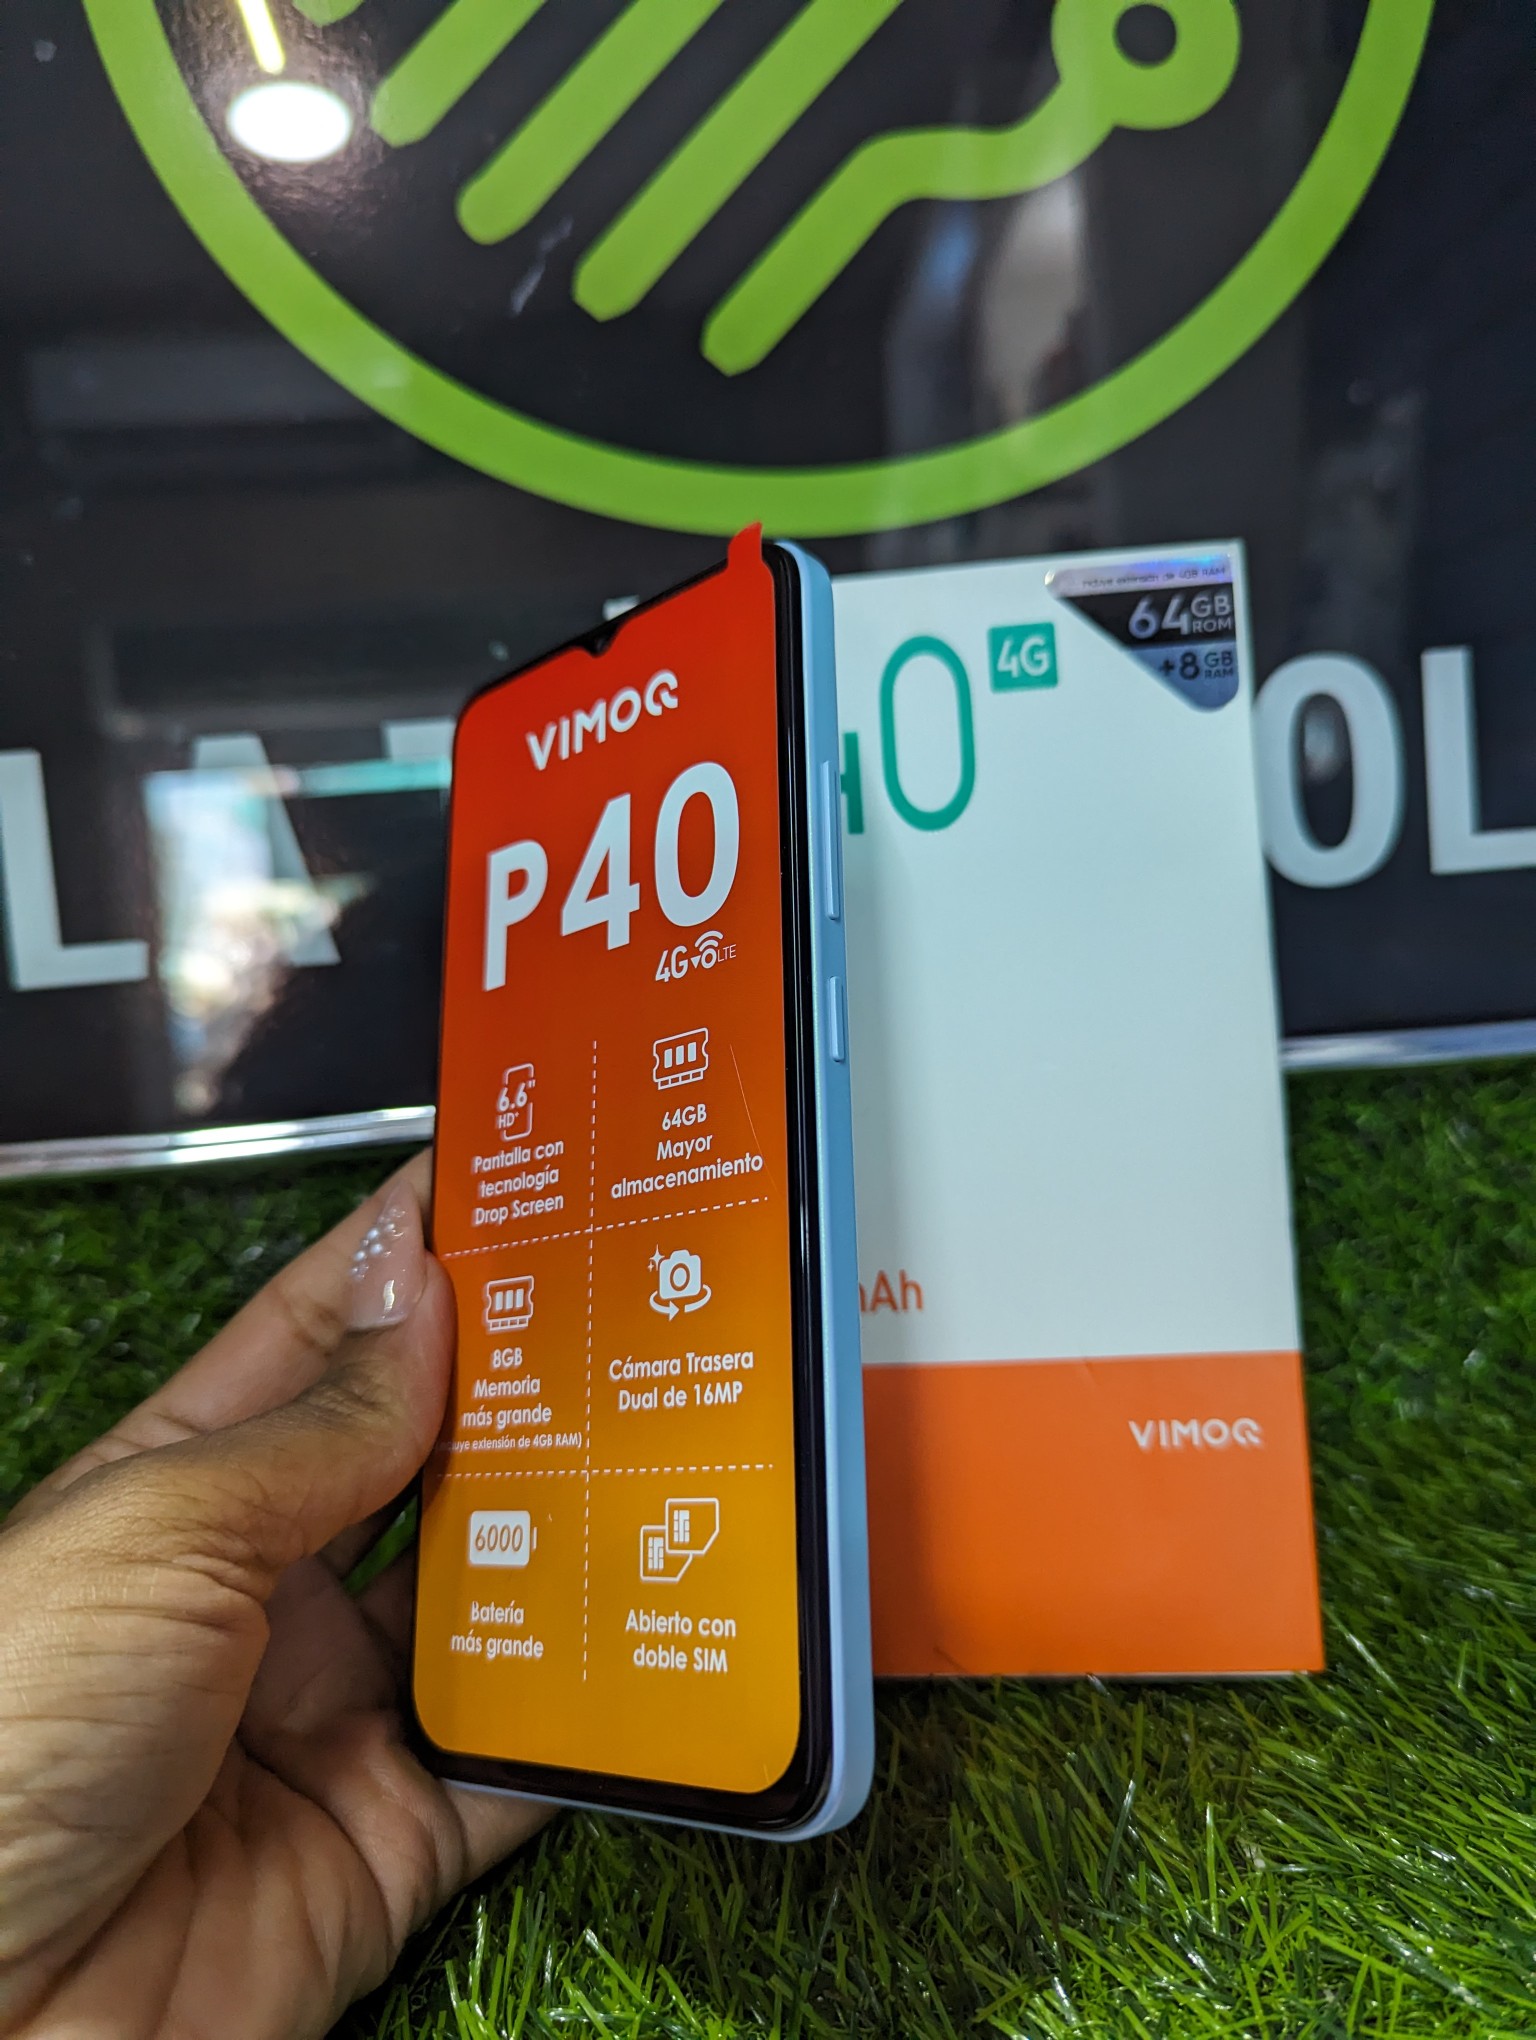 celulares y tabletas - Celulares nuevos vimoq 2